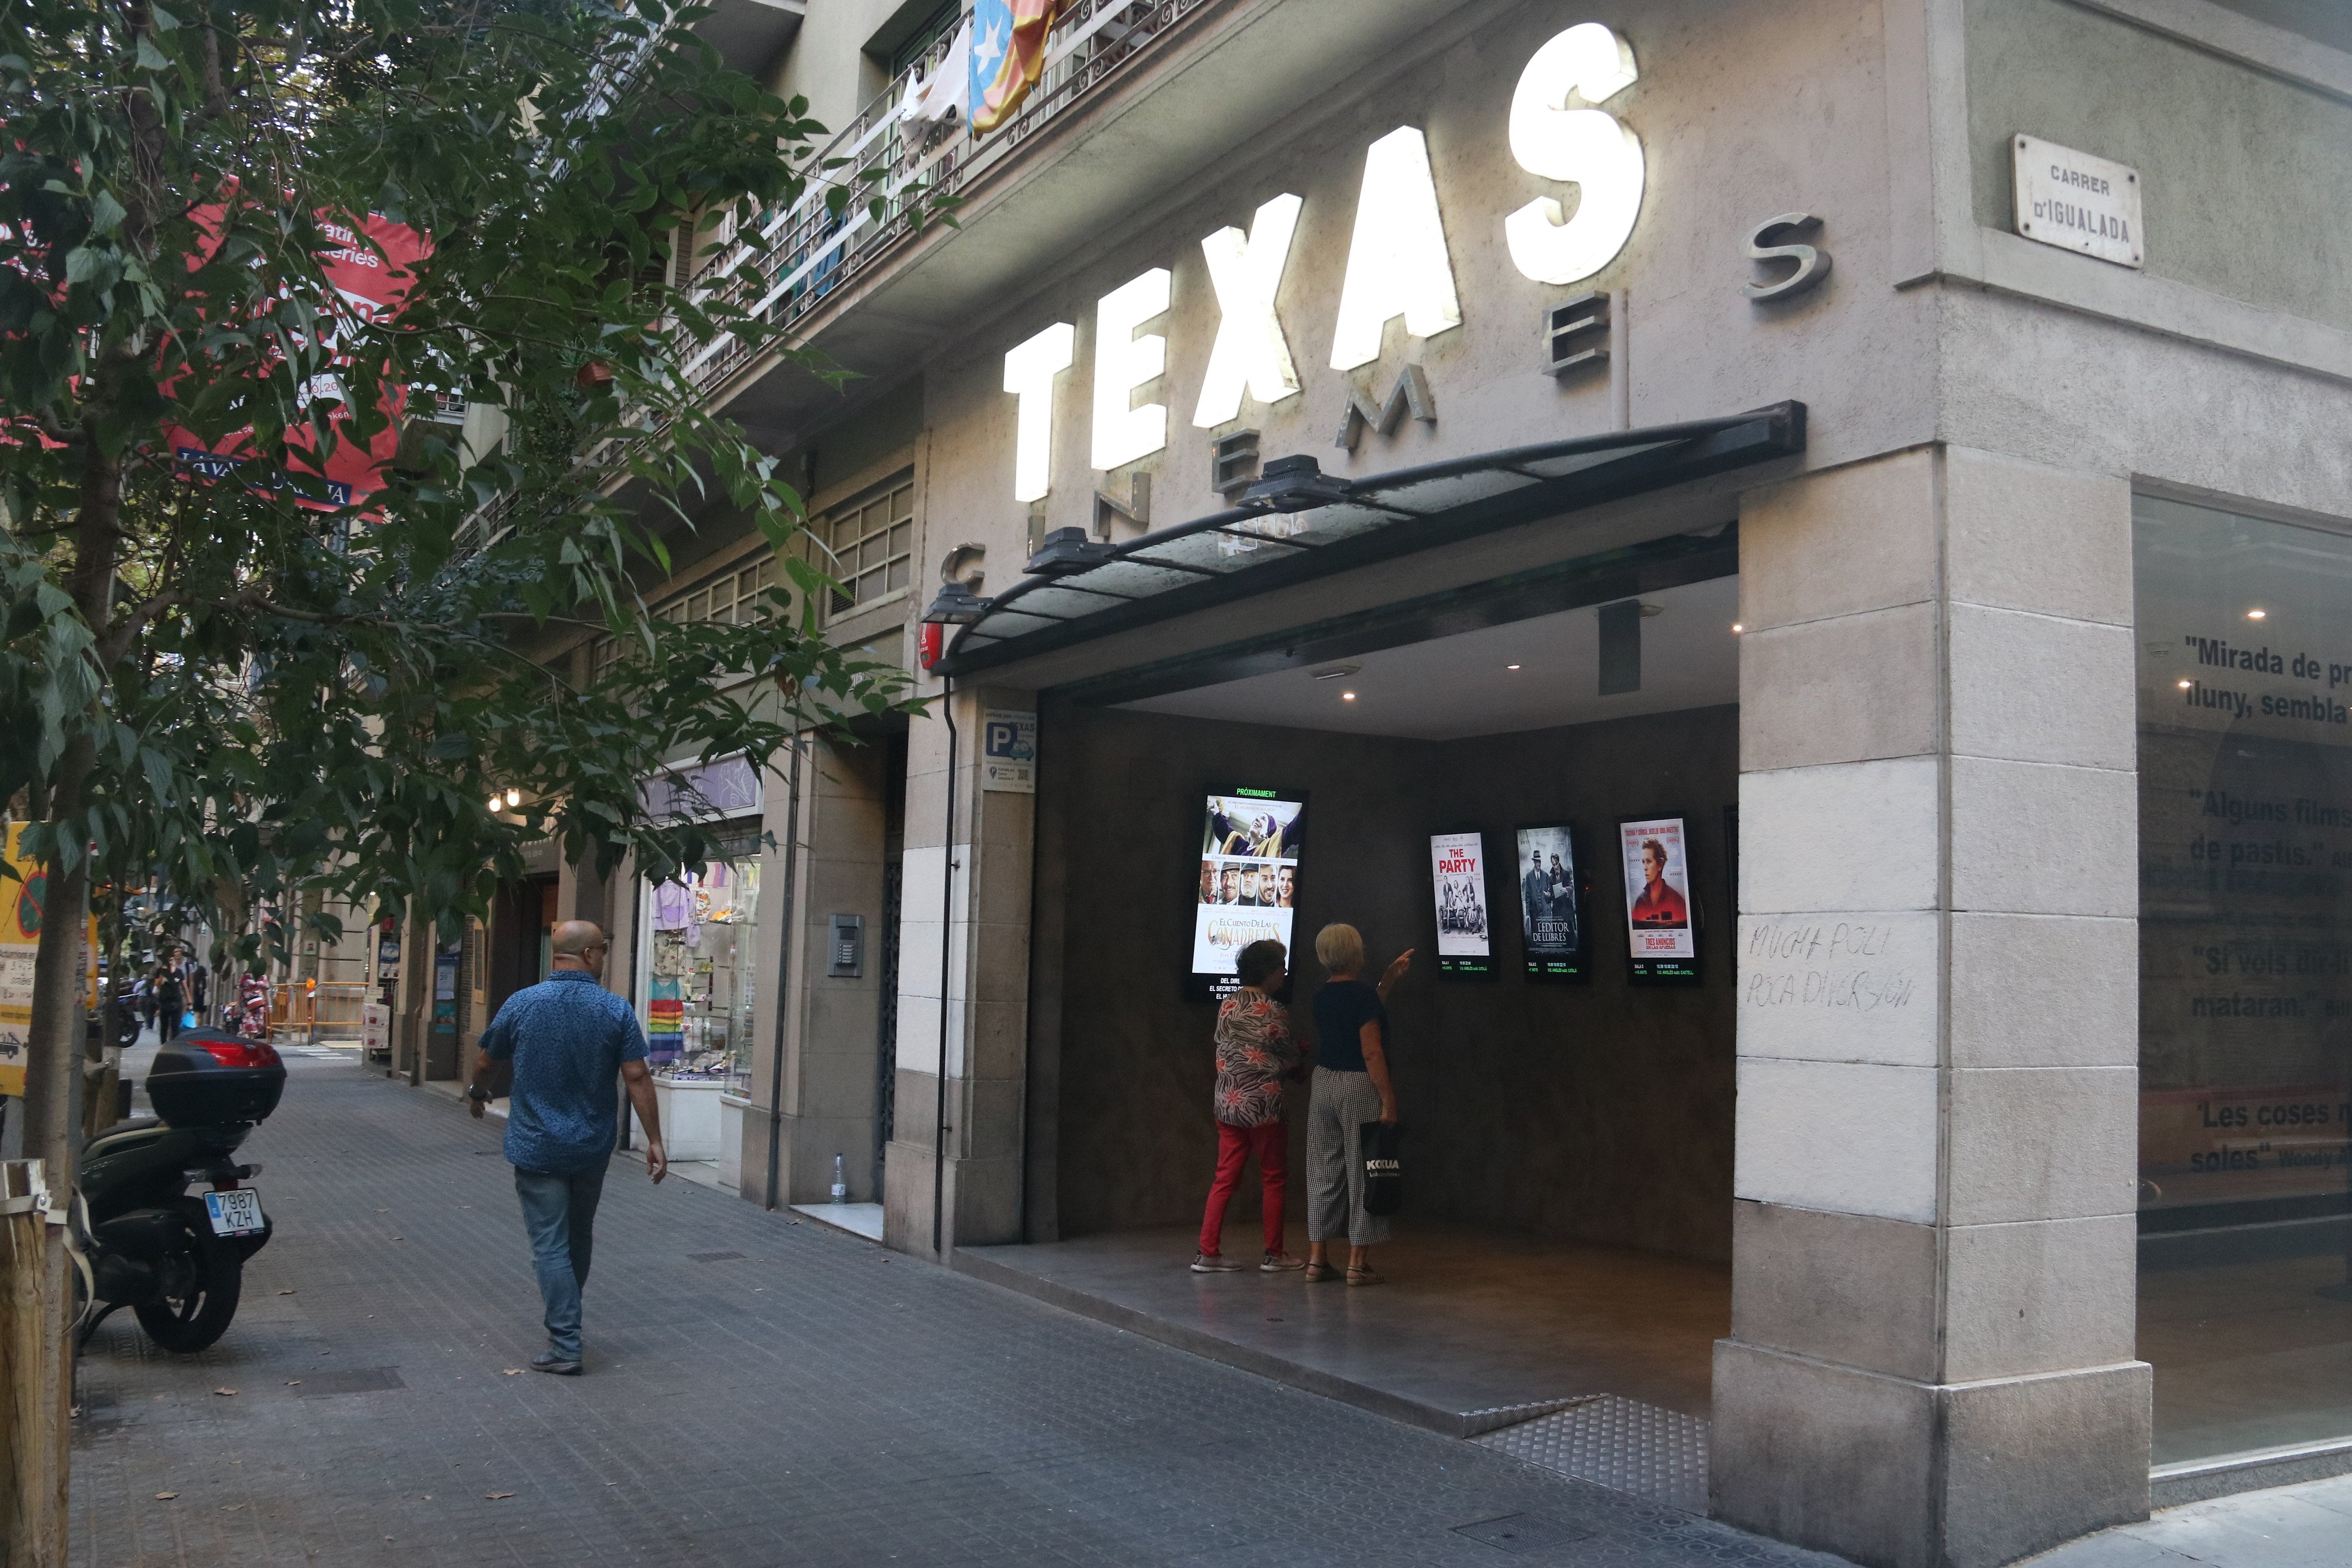 El nou Texas preveu obrir al setembre amb 2 sales de cinema, teatre i espai gastronòmic